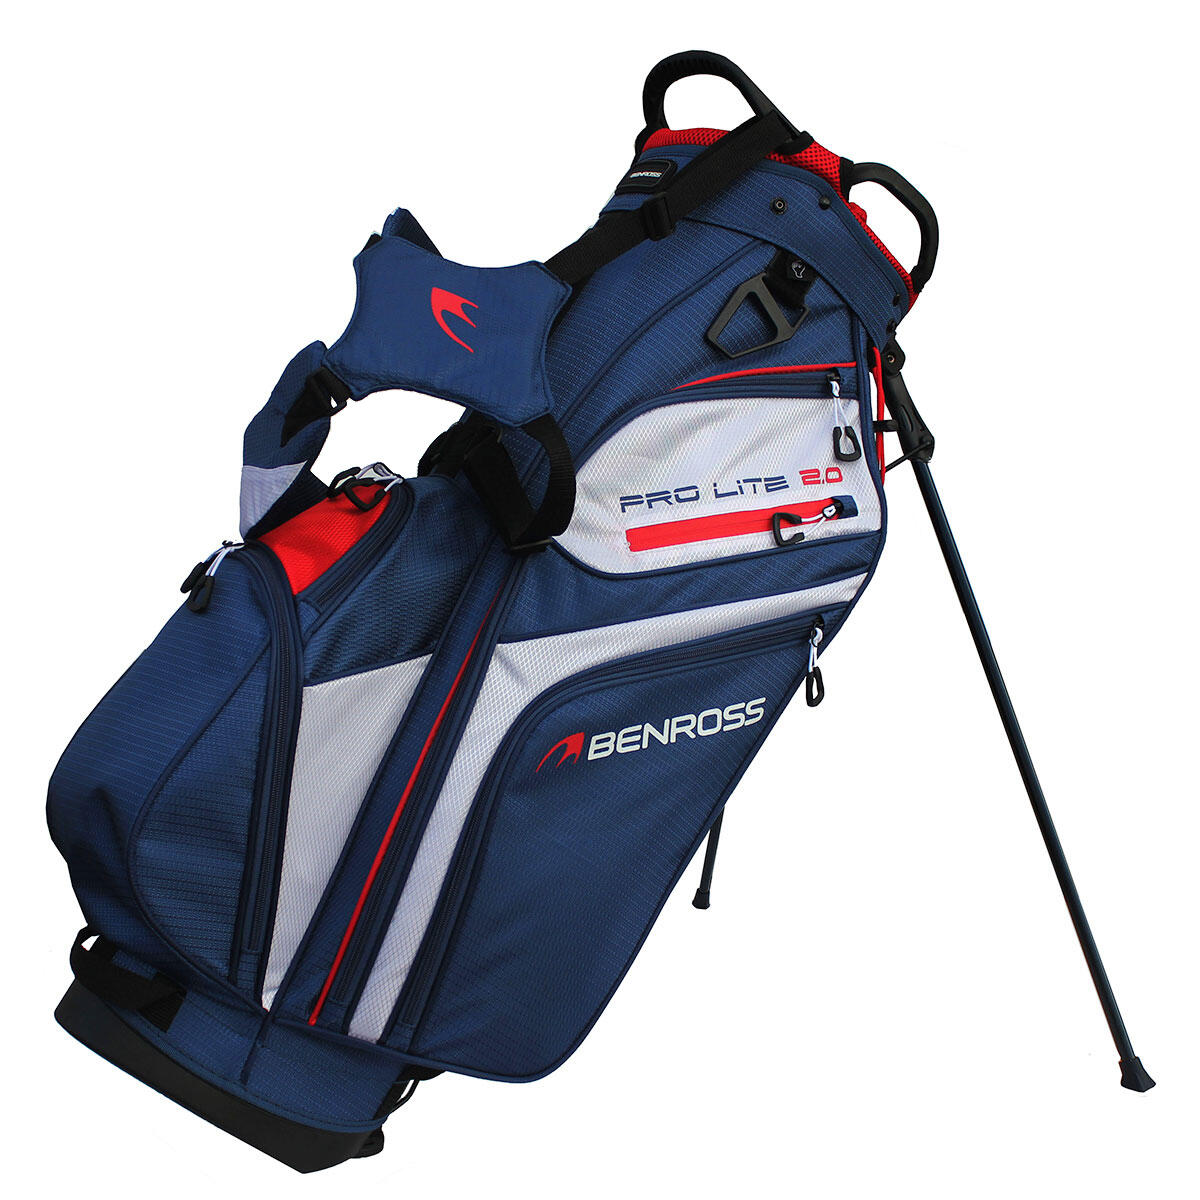 Benross Pro-Lite 2.0 Golf Stand Bag 1/4